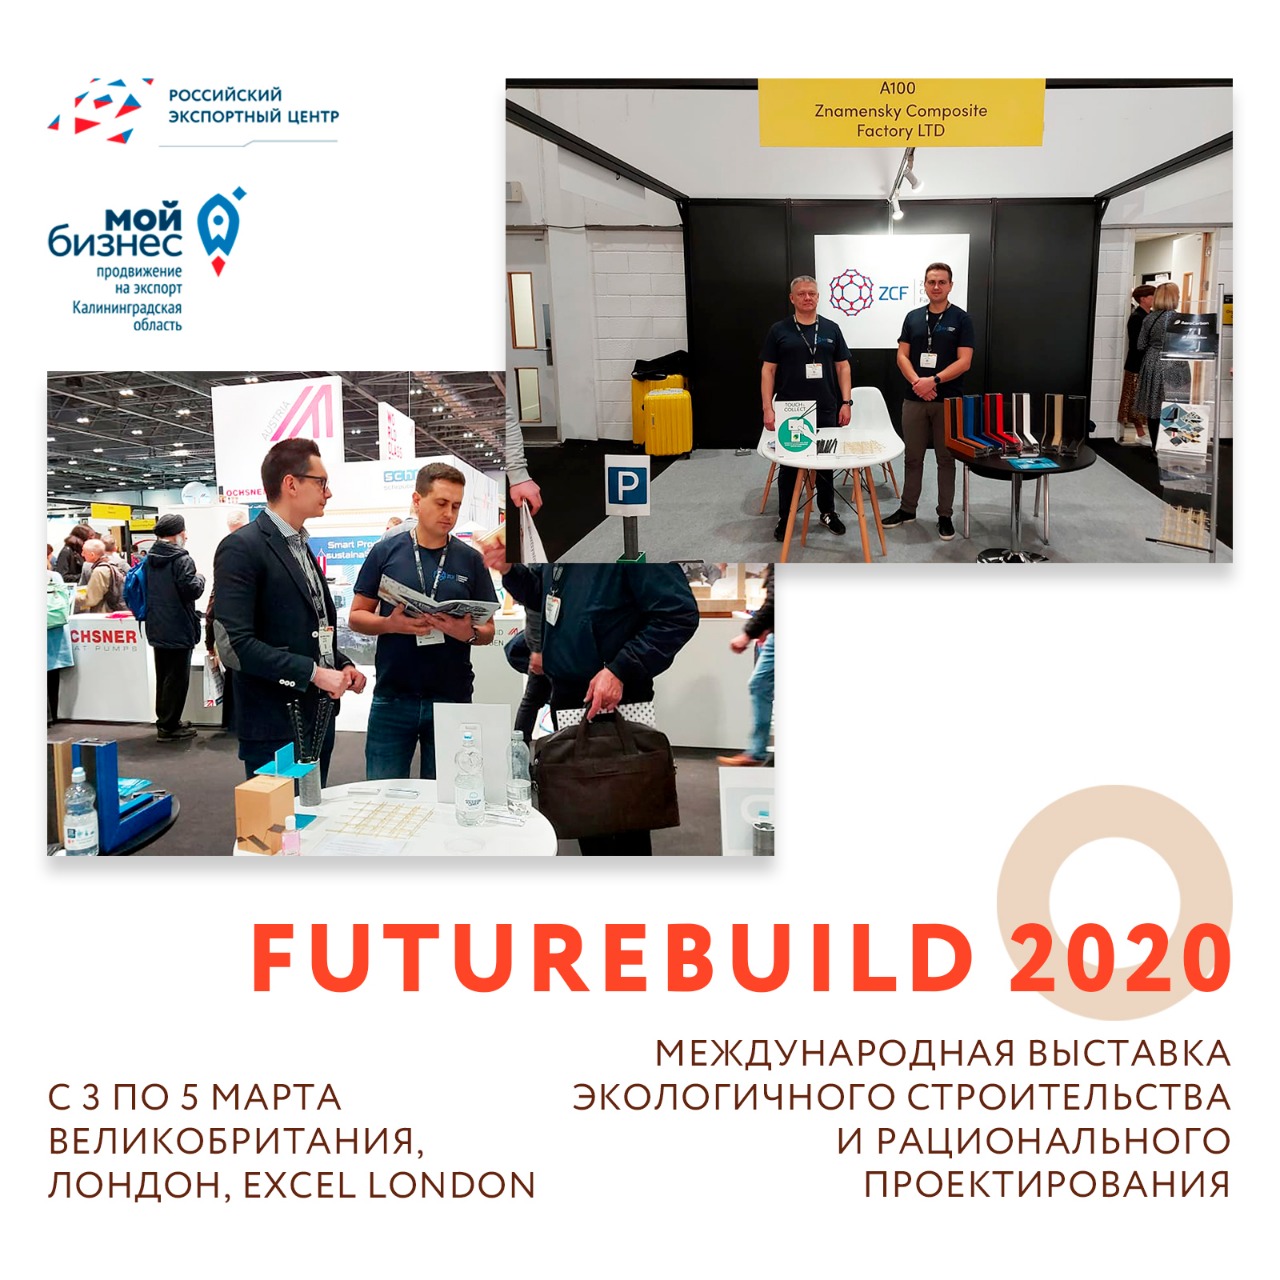 Завершила свою работу Международная выставка "Futurebuild 2020"